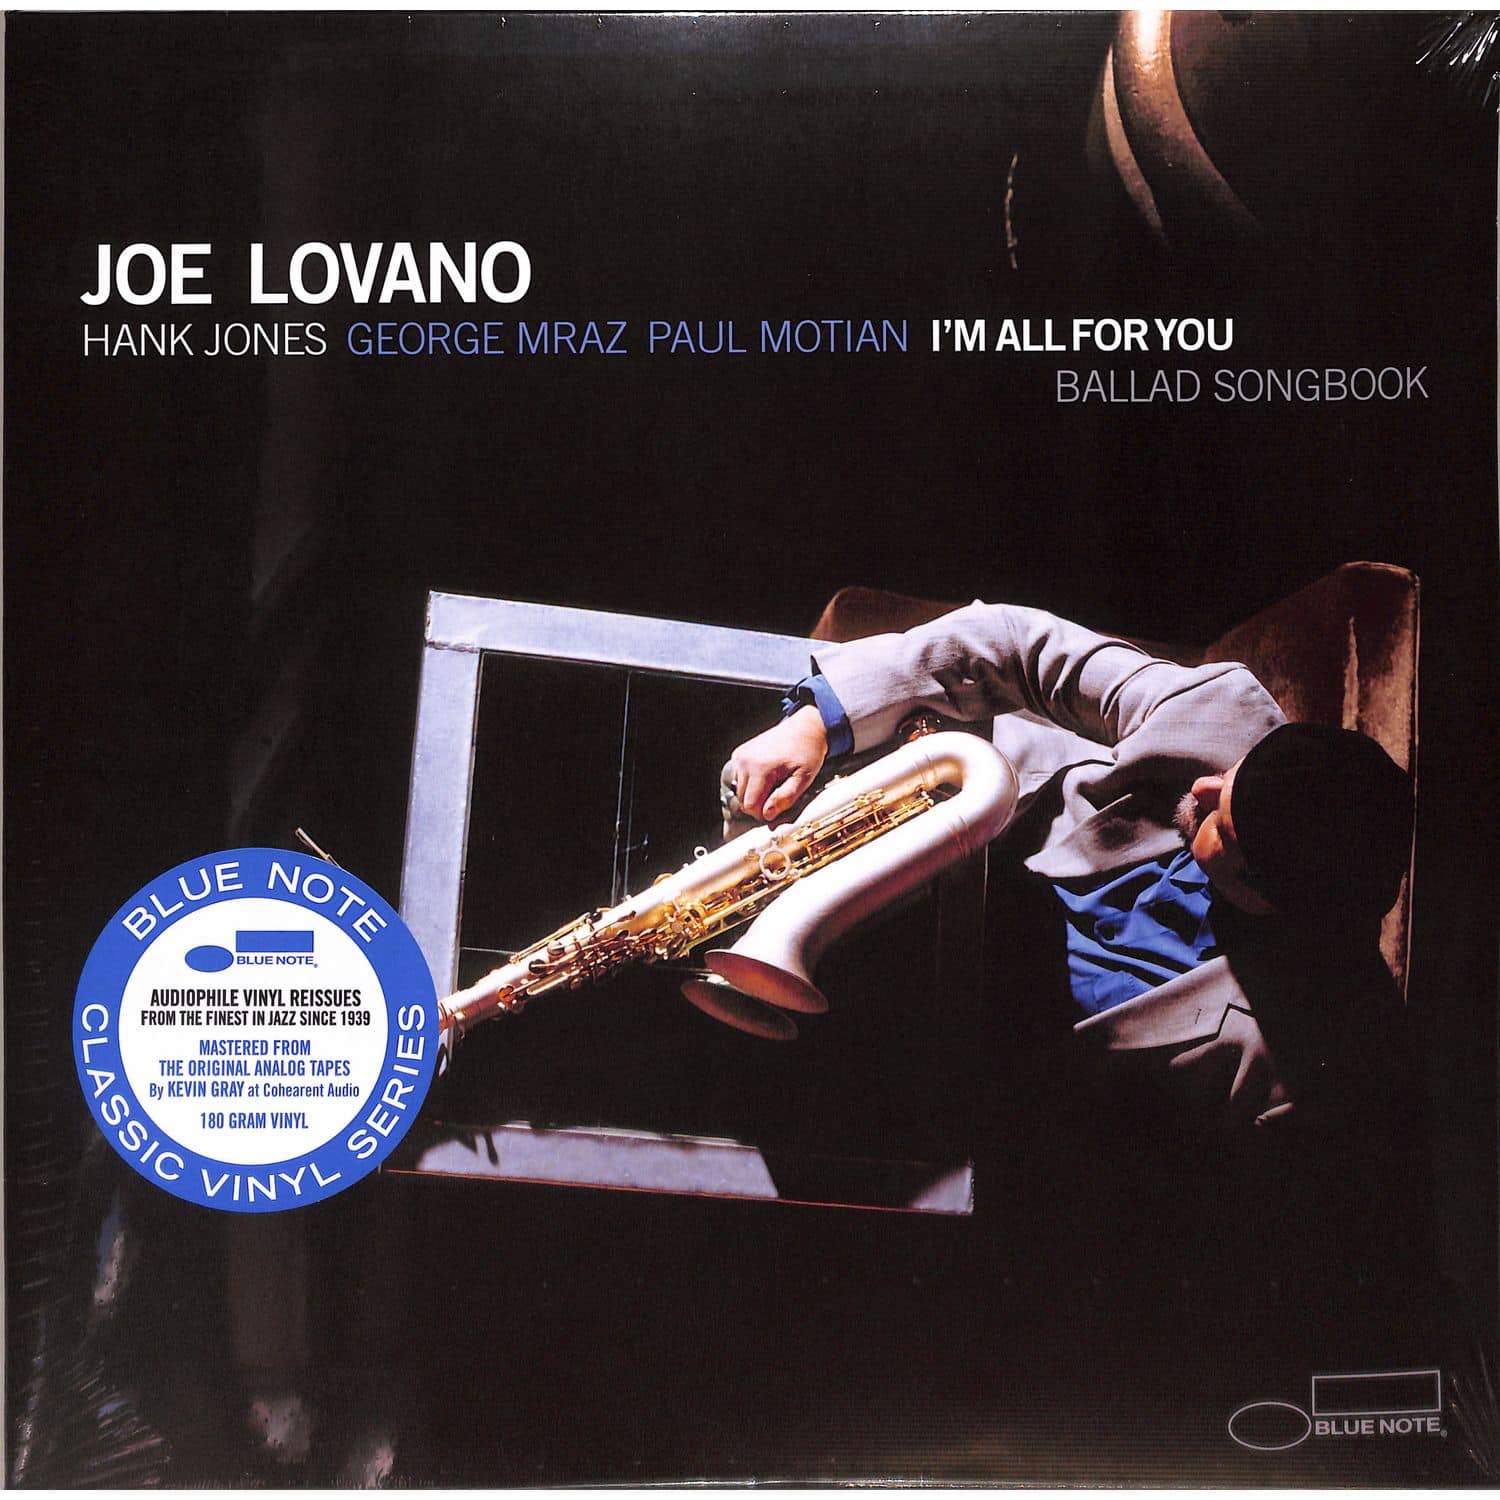 Joe Lovano - I M ALL FOR YOU 